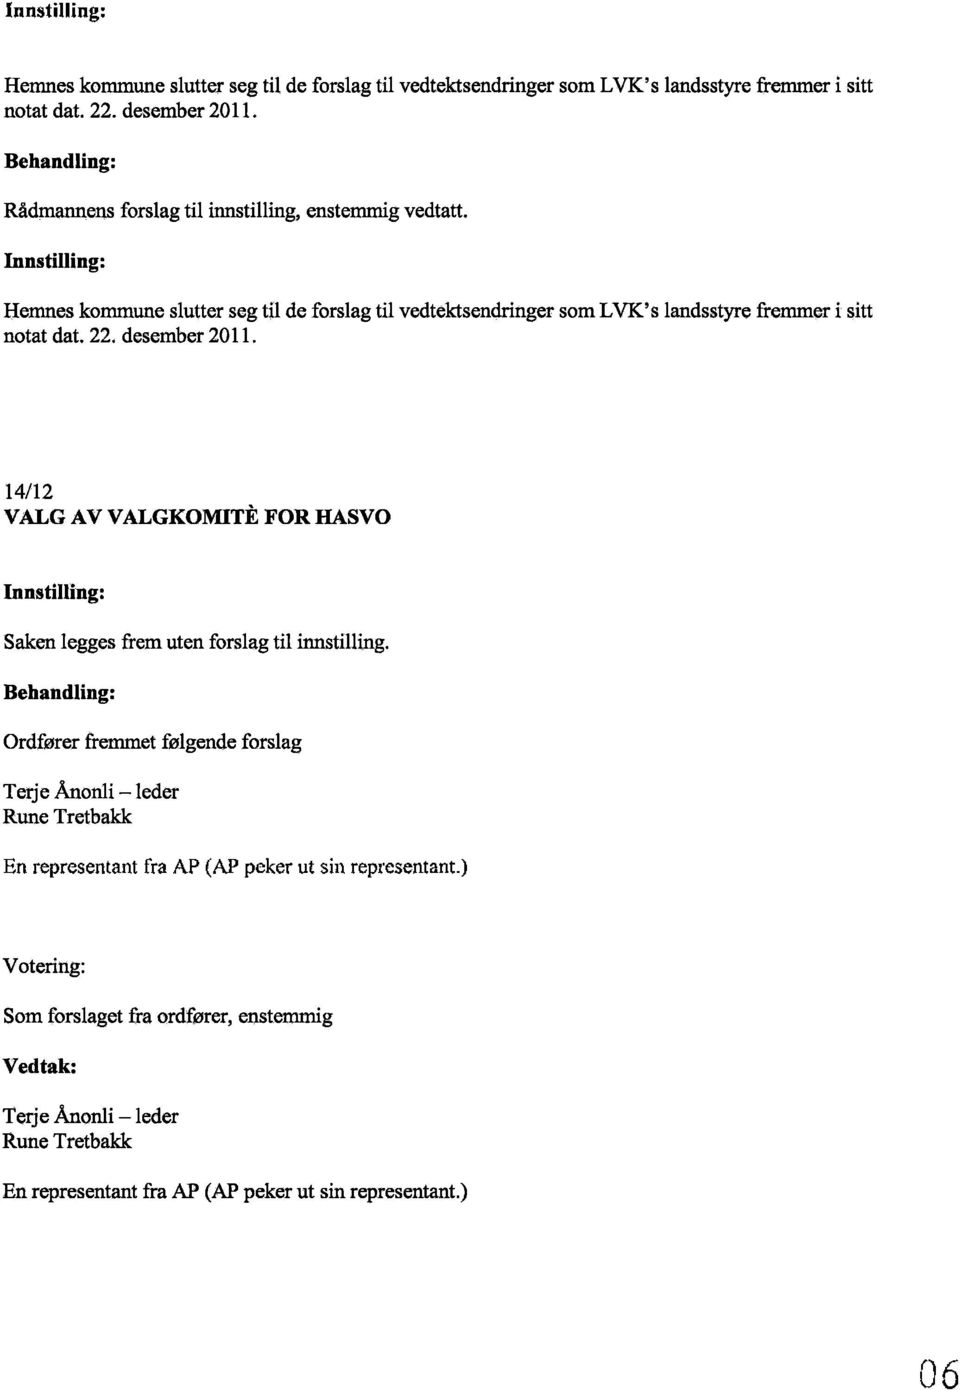 nnstilling: Hemnes kommune sltrtter seg til de forslag til vedtektsendringer som LVK's landsstyre fremmer i sitt notat dat. 22. desember 2011.